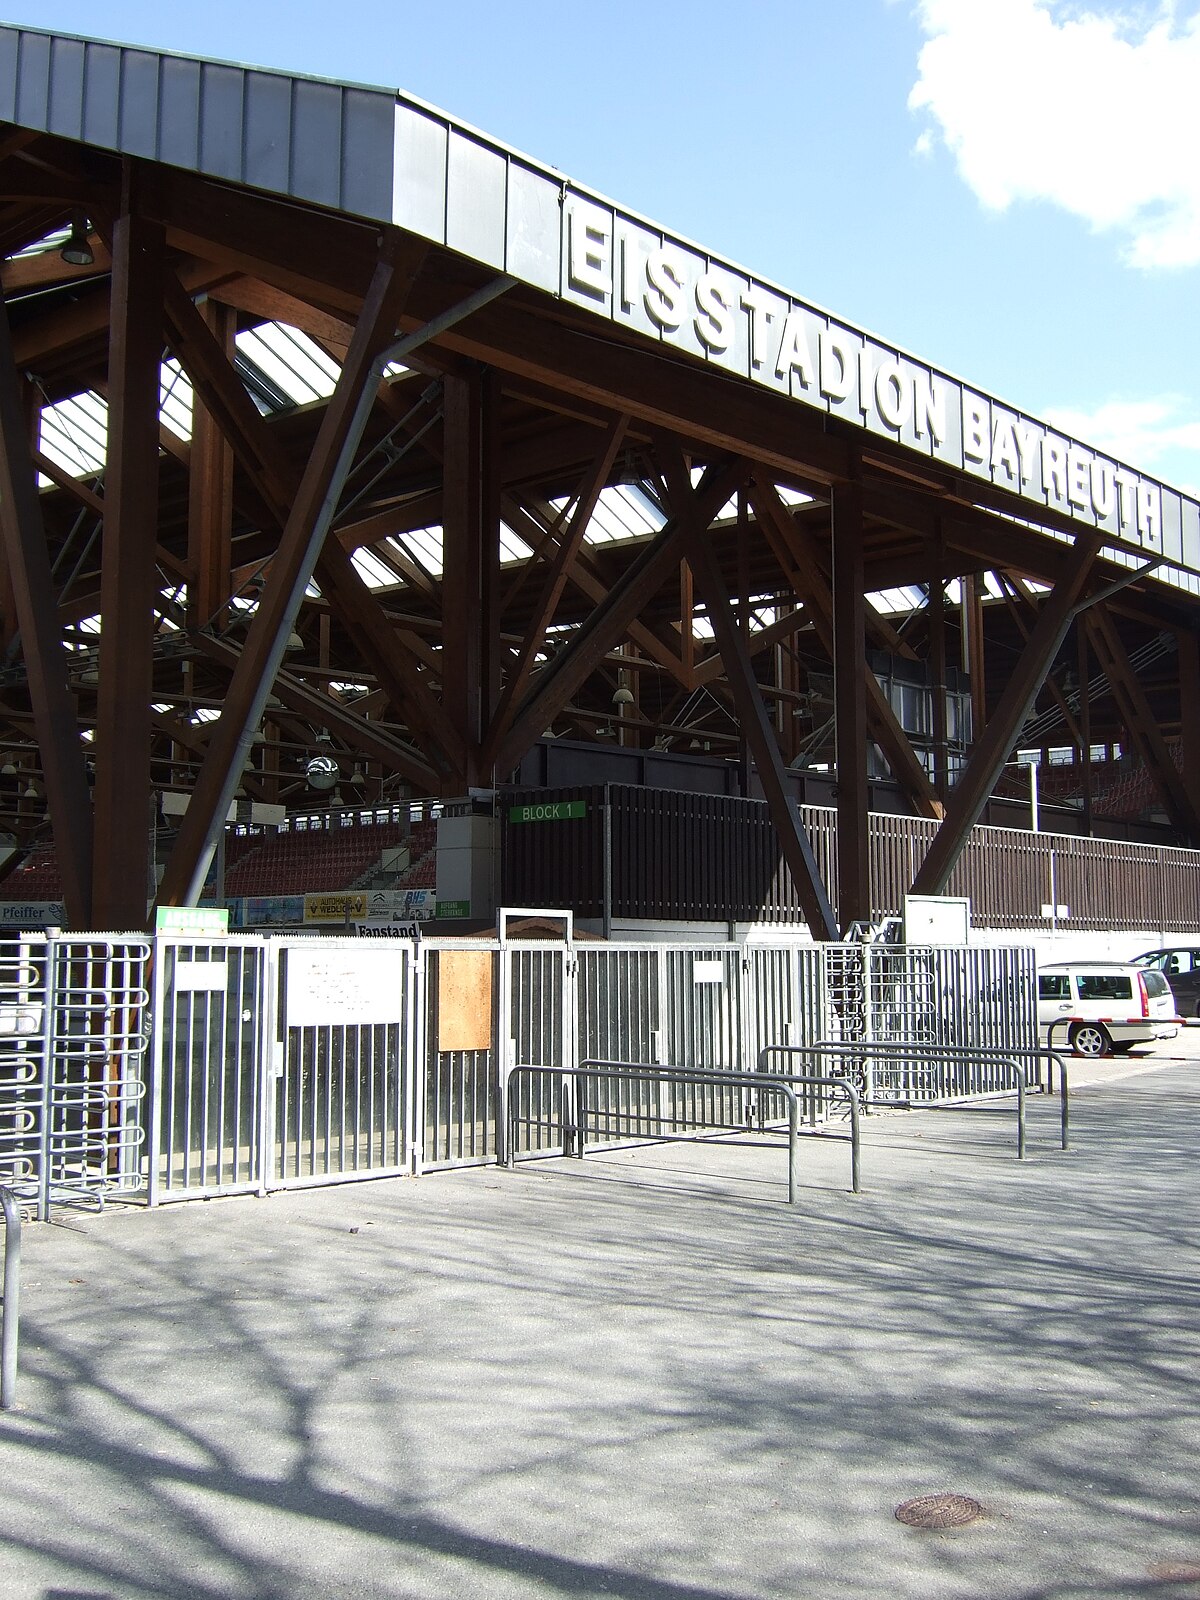 Kunsteisstadion Bayreuth